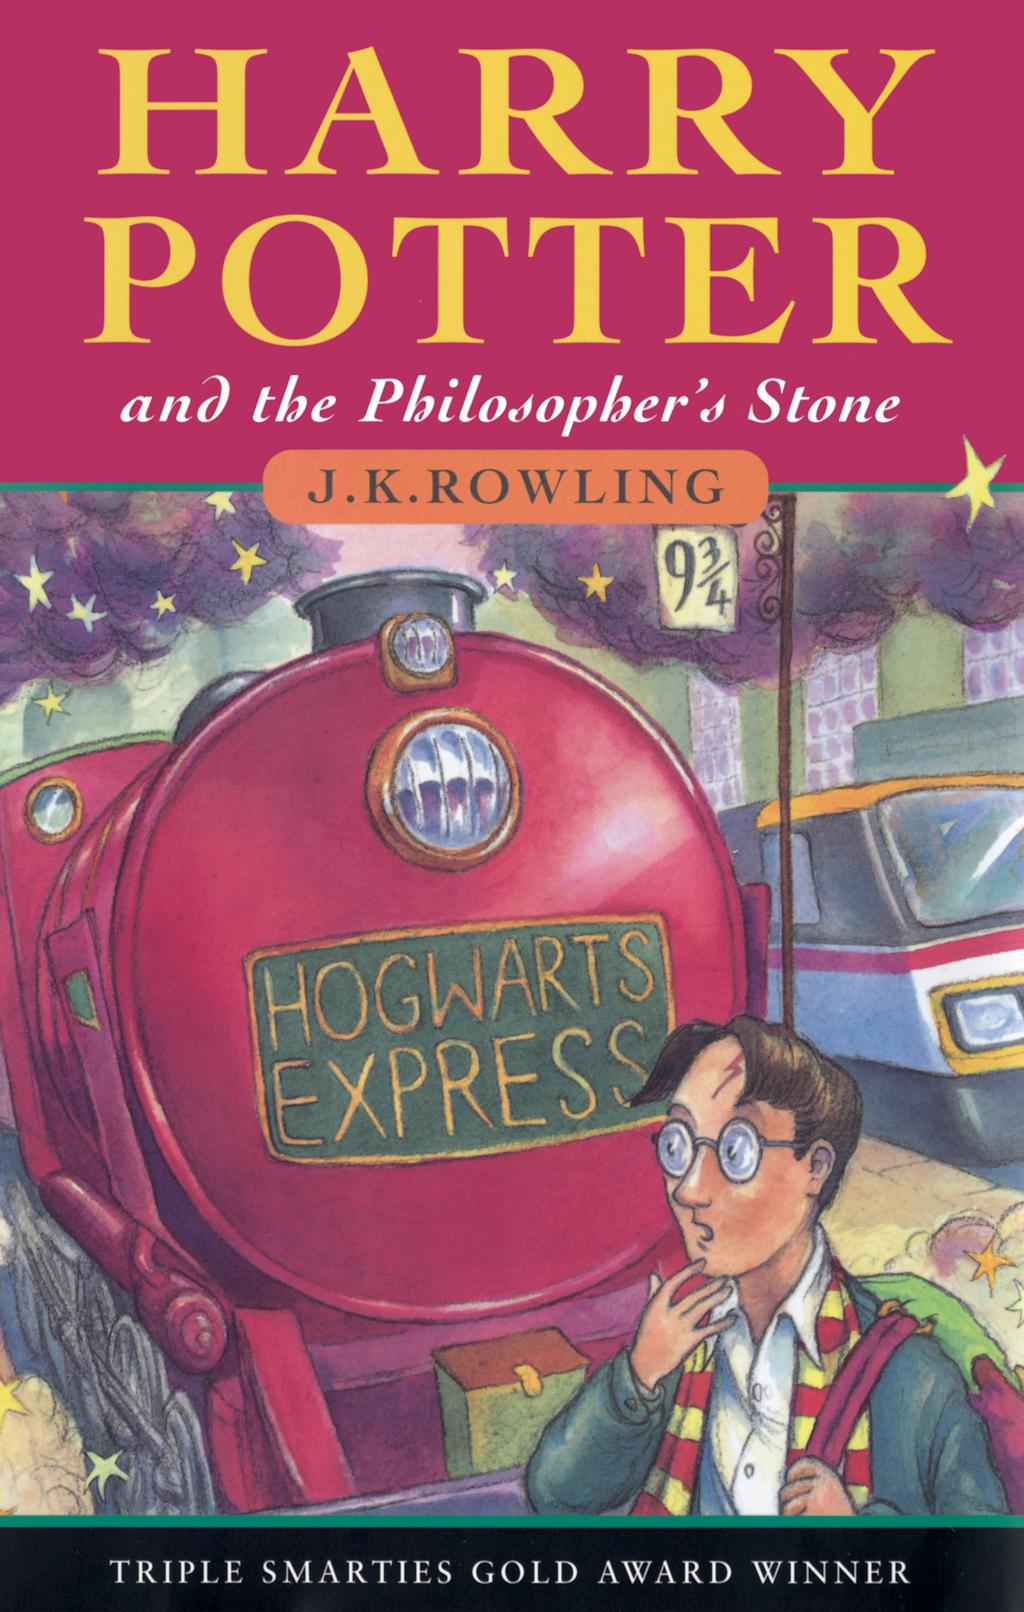 Haar pas uitgekomen boeken; Harry Potter en de steen der wijzen, Harry potter en de geheime kamer, Harry potter en de gevangene van Azkaban, Harry potter en de vuurbeker werden over de hele wereld